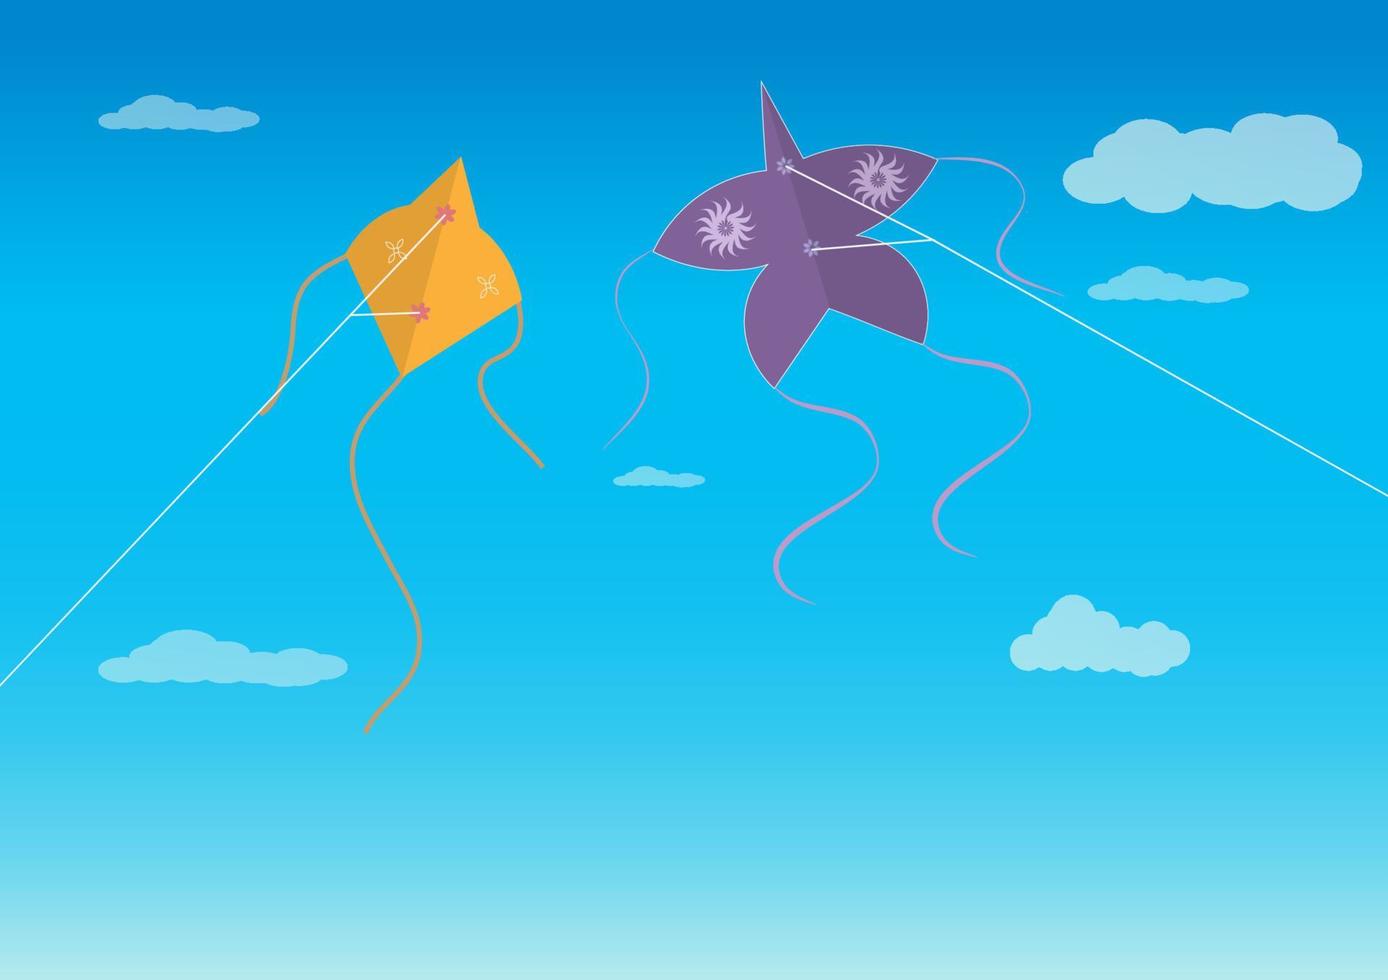 vliegers vliegen in de lucht in de vorm van puffers en sterren. hobby's en amusement. vector platte cartoon afbeelding.